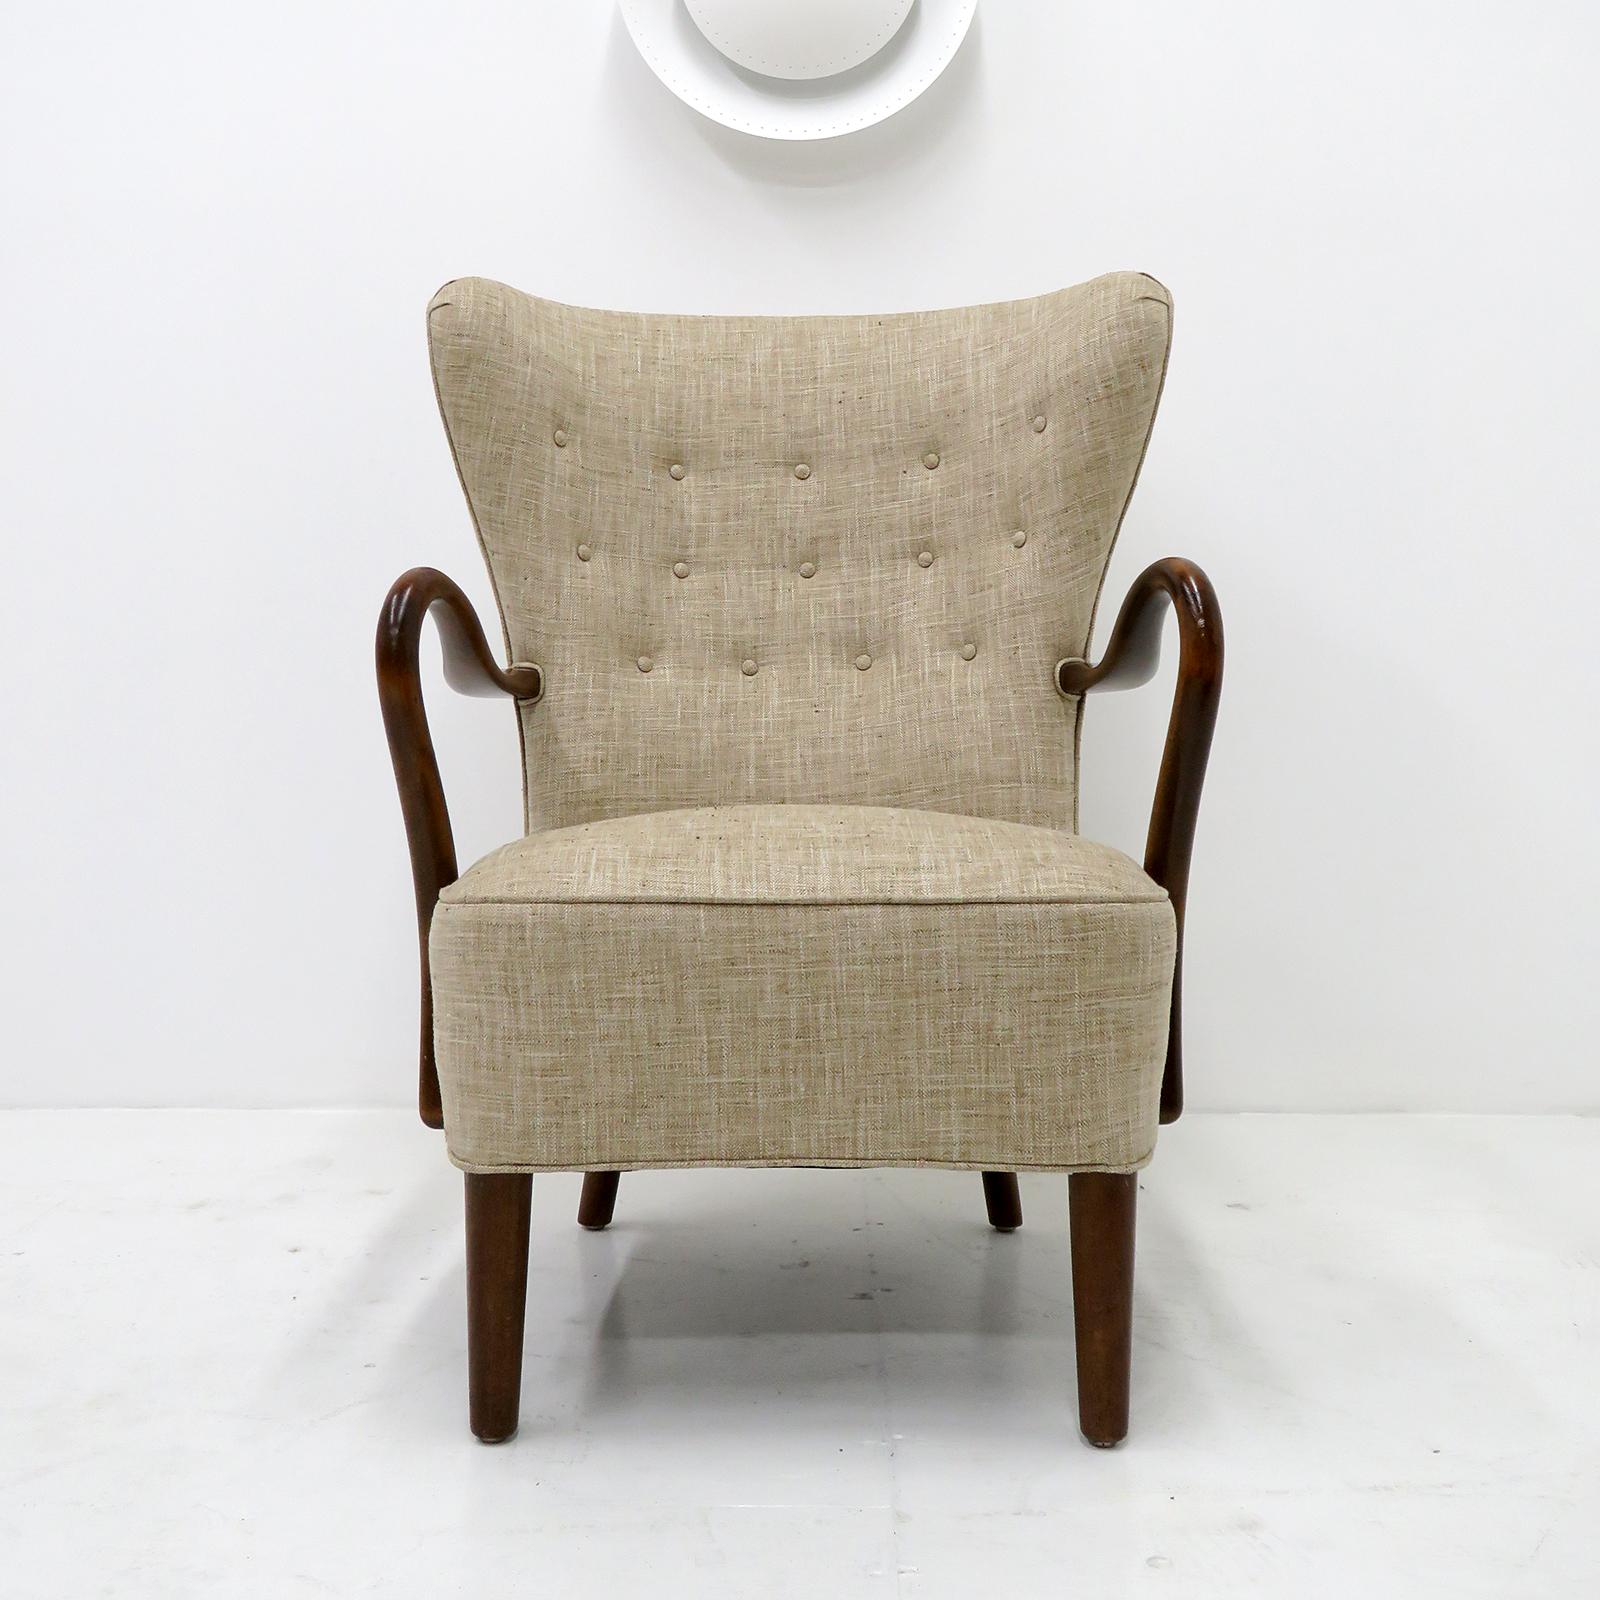 Auffälliger dänischer Sessel mit hohem Profil, entworfen von Alfred Christensen, 1950, hergestellt in Slagelse Mobelvaerk, aus dunkel gebeiztem Holz und mit neuer Polsterung.